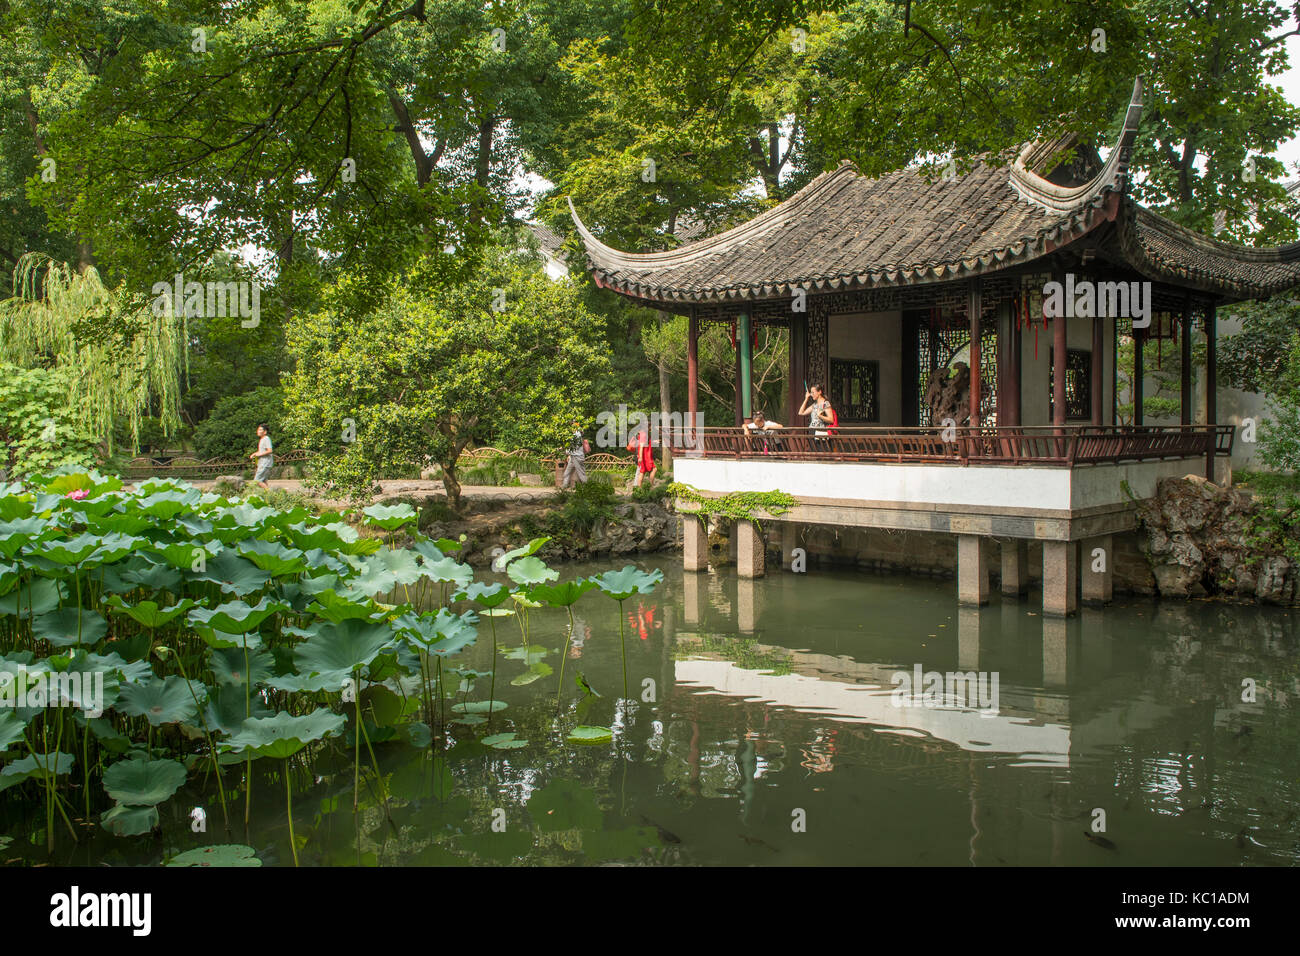 Weit weg auf der Suche Pavillon, die demütige administrator Garten, Suzhou, China Stockfoto